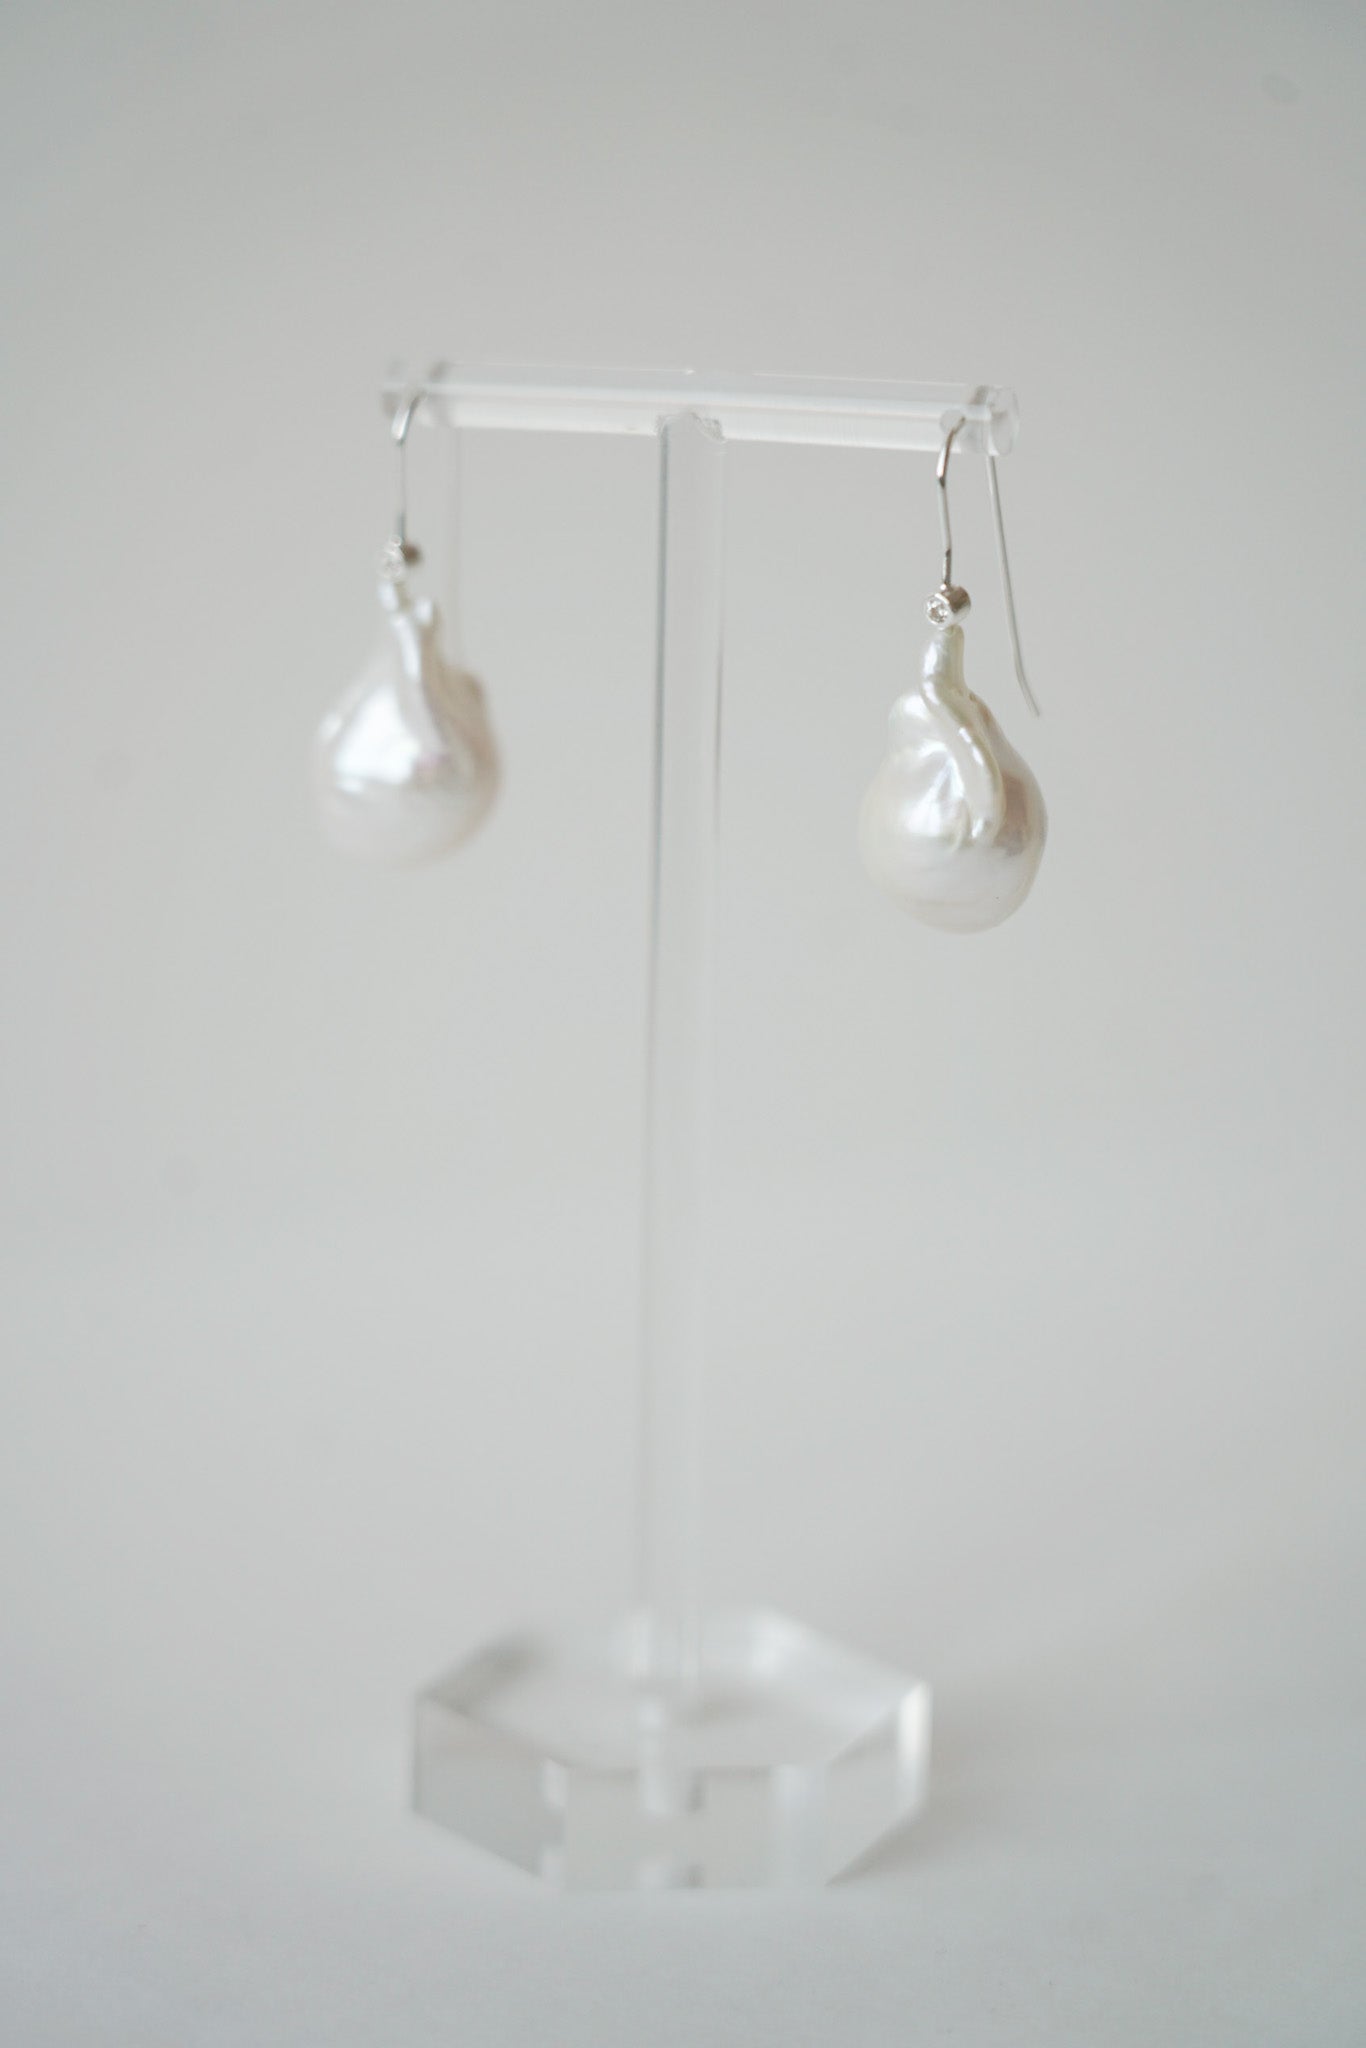 une paire de boucles d'oreilles pour mariage avec des perles naturelles irrégulière baroque et une attache argenté sur un portant à bijoux transparent